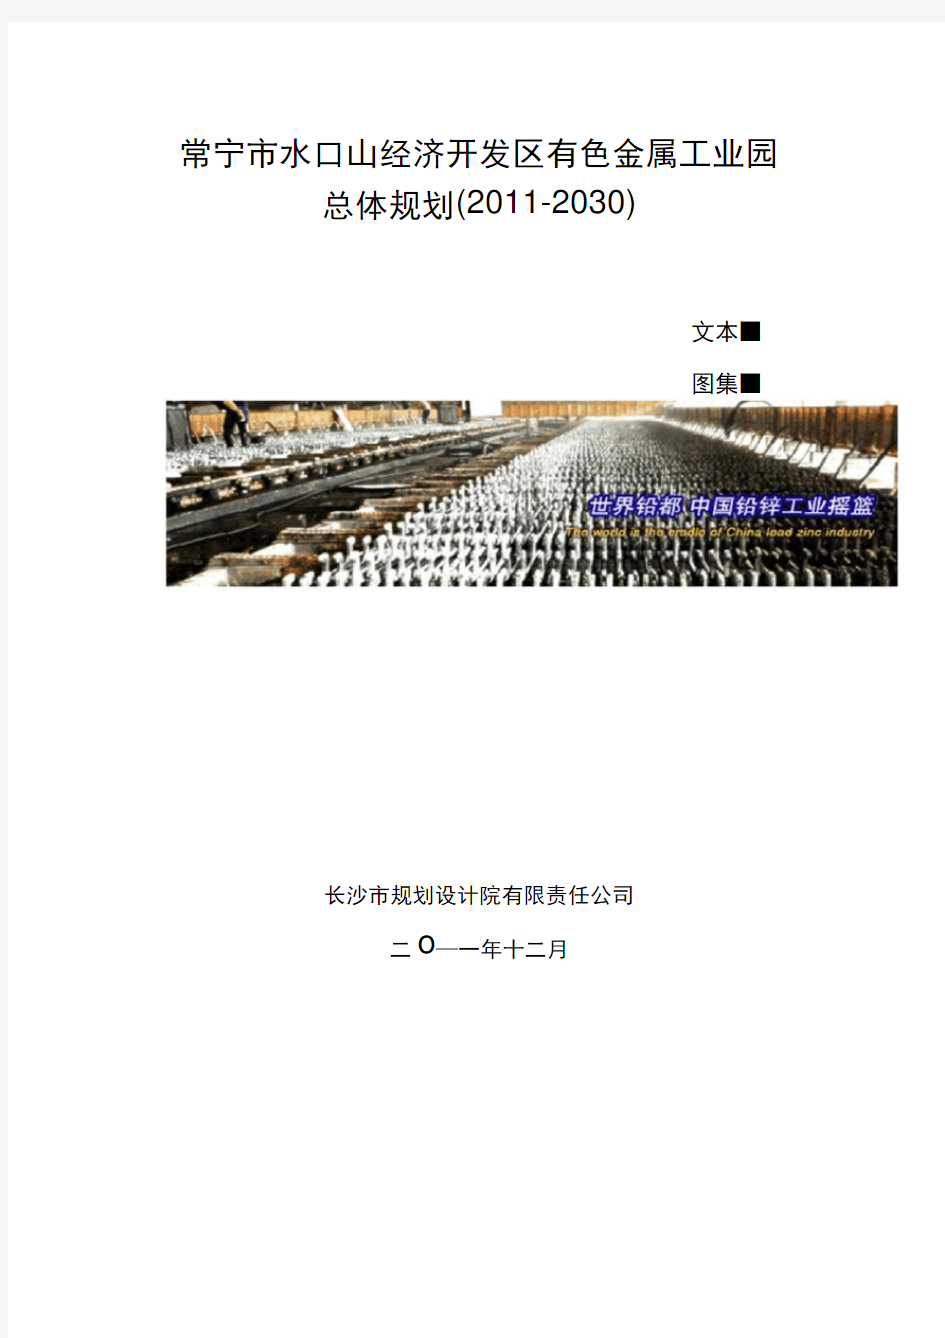 常宁市水口山经济开发区有色金属工业园总体规划文本20191128112529.docx